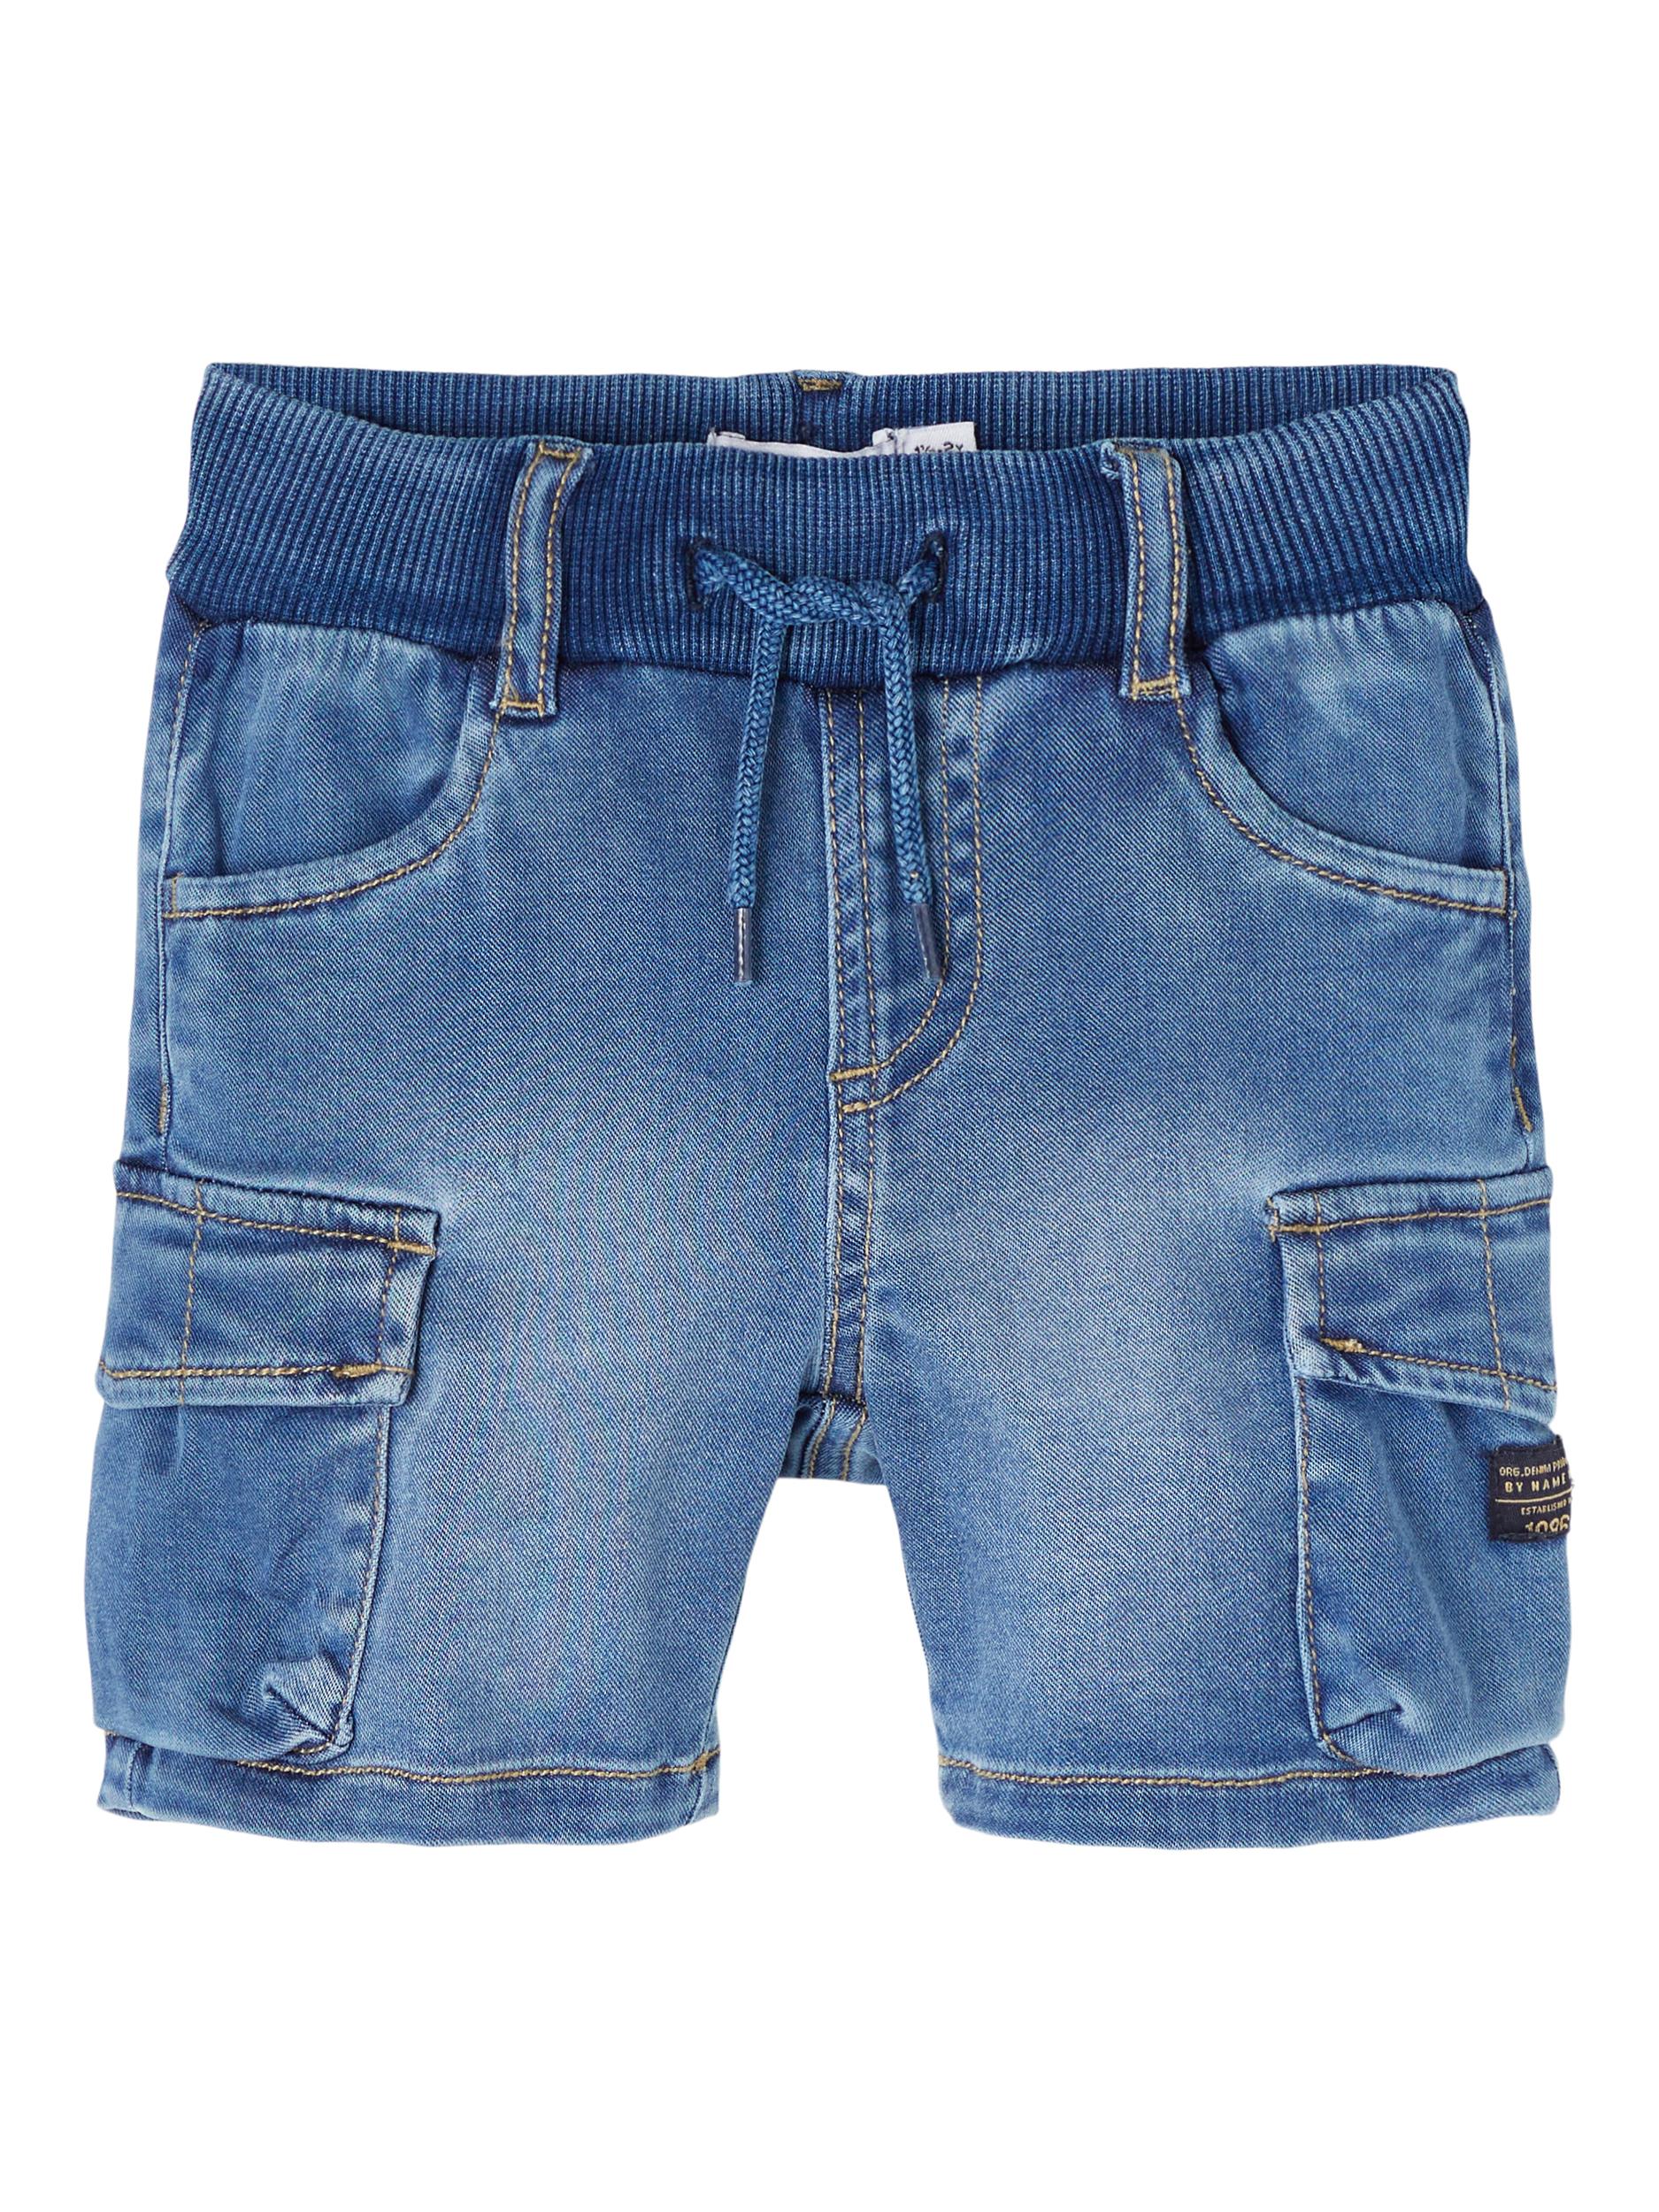  Ryan Denim Shorts, Medium Blue Denim, 98 cm